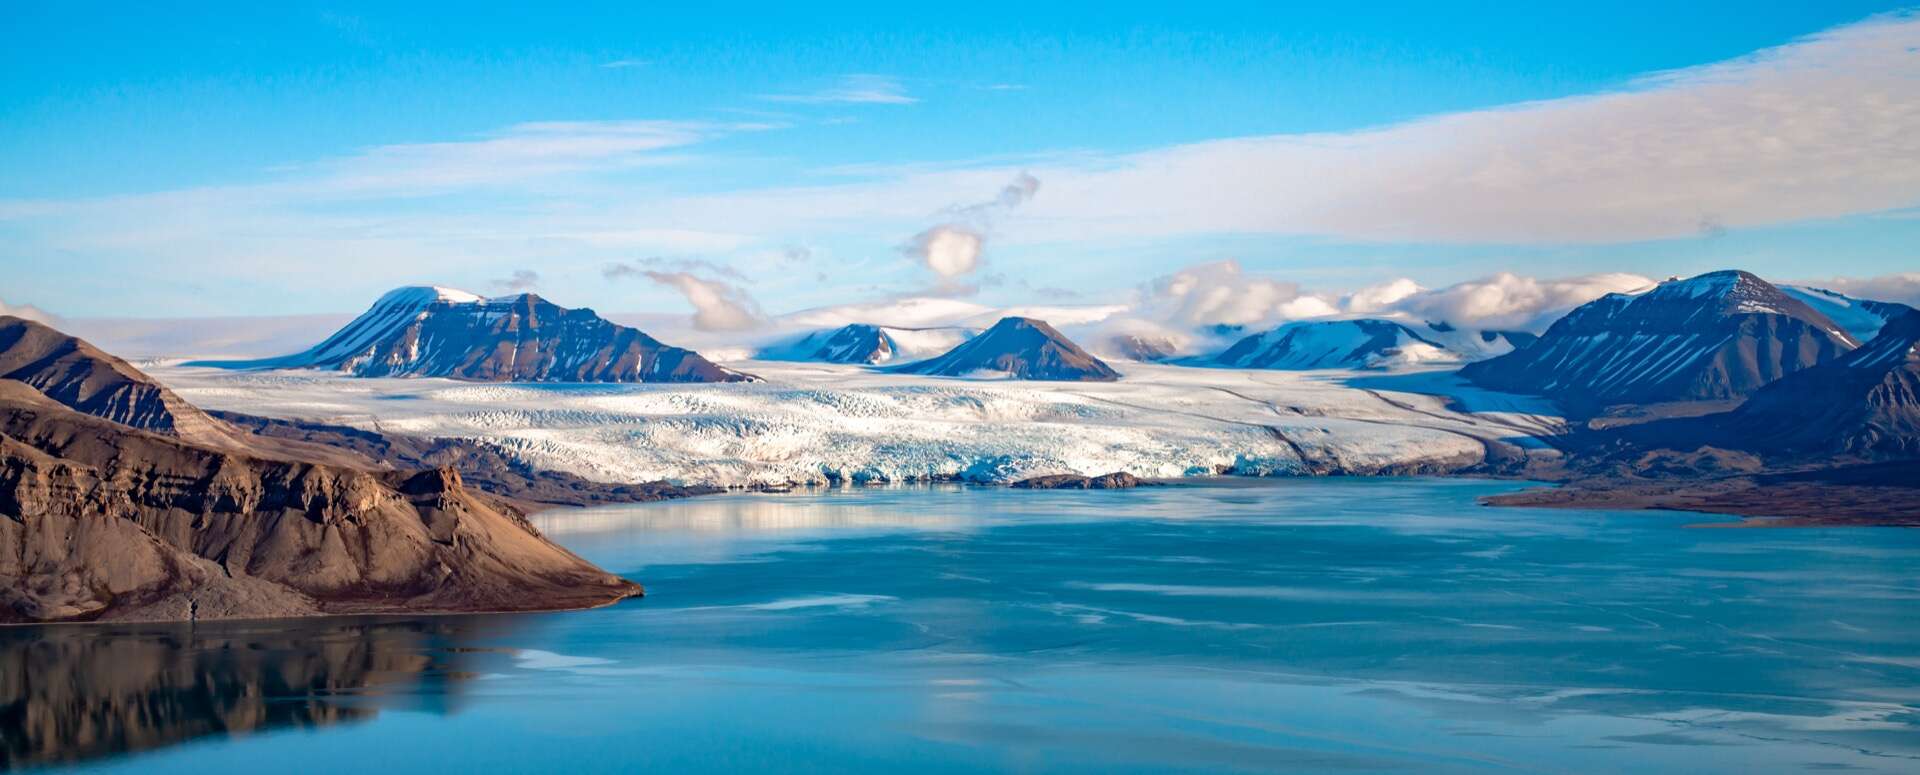 Des traces de crème solaire retrouvées… au Pôle Nord !